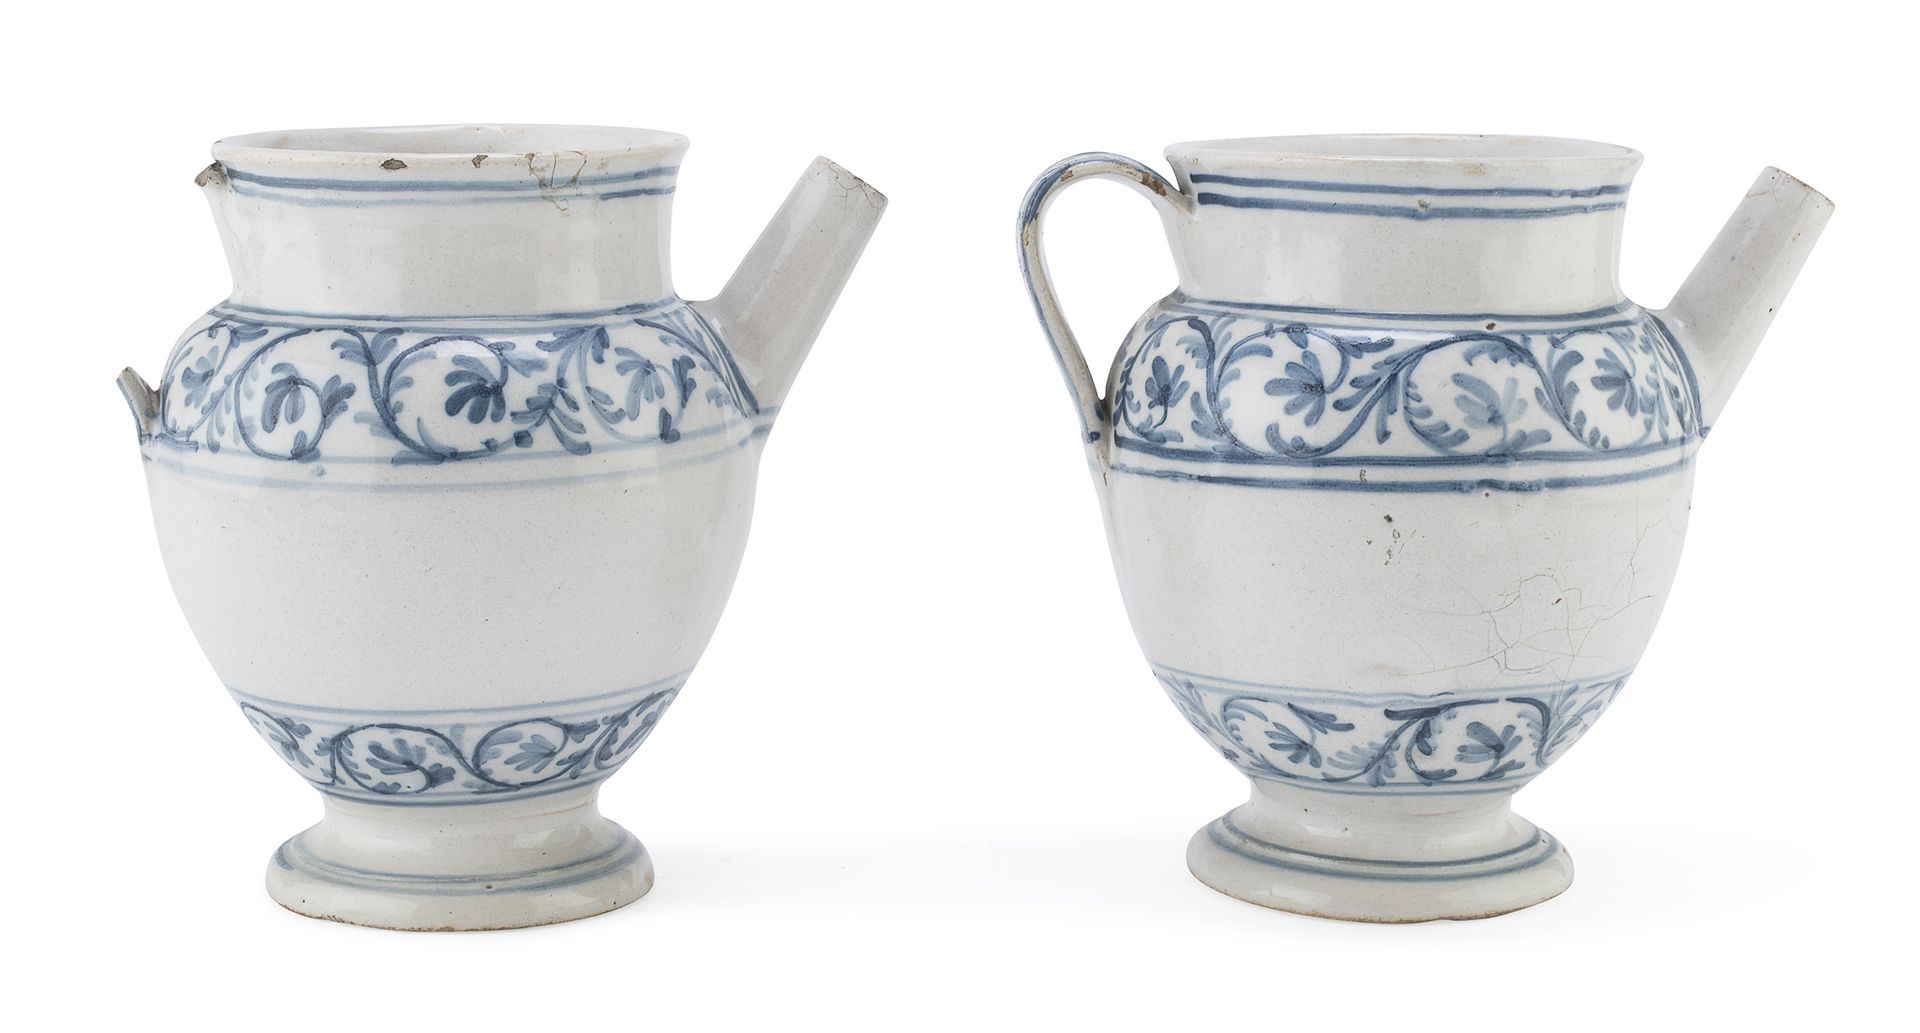 Null 成对的马戈里卡水壶，18世纪末

白色和蓝色的珐琅，主体装饰有一圈扭曲的植物图案。

尺寸为19 x 14 x 20厘米。

缺少一个手柄，边缘有缺陷&hellip;